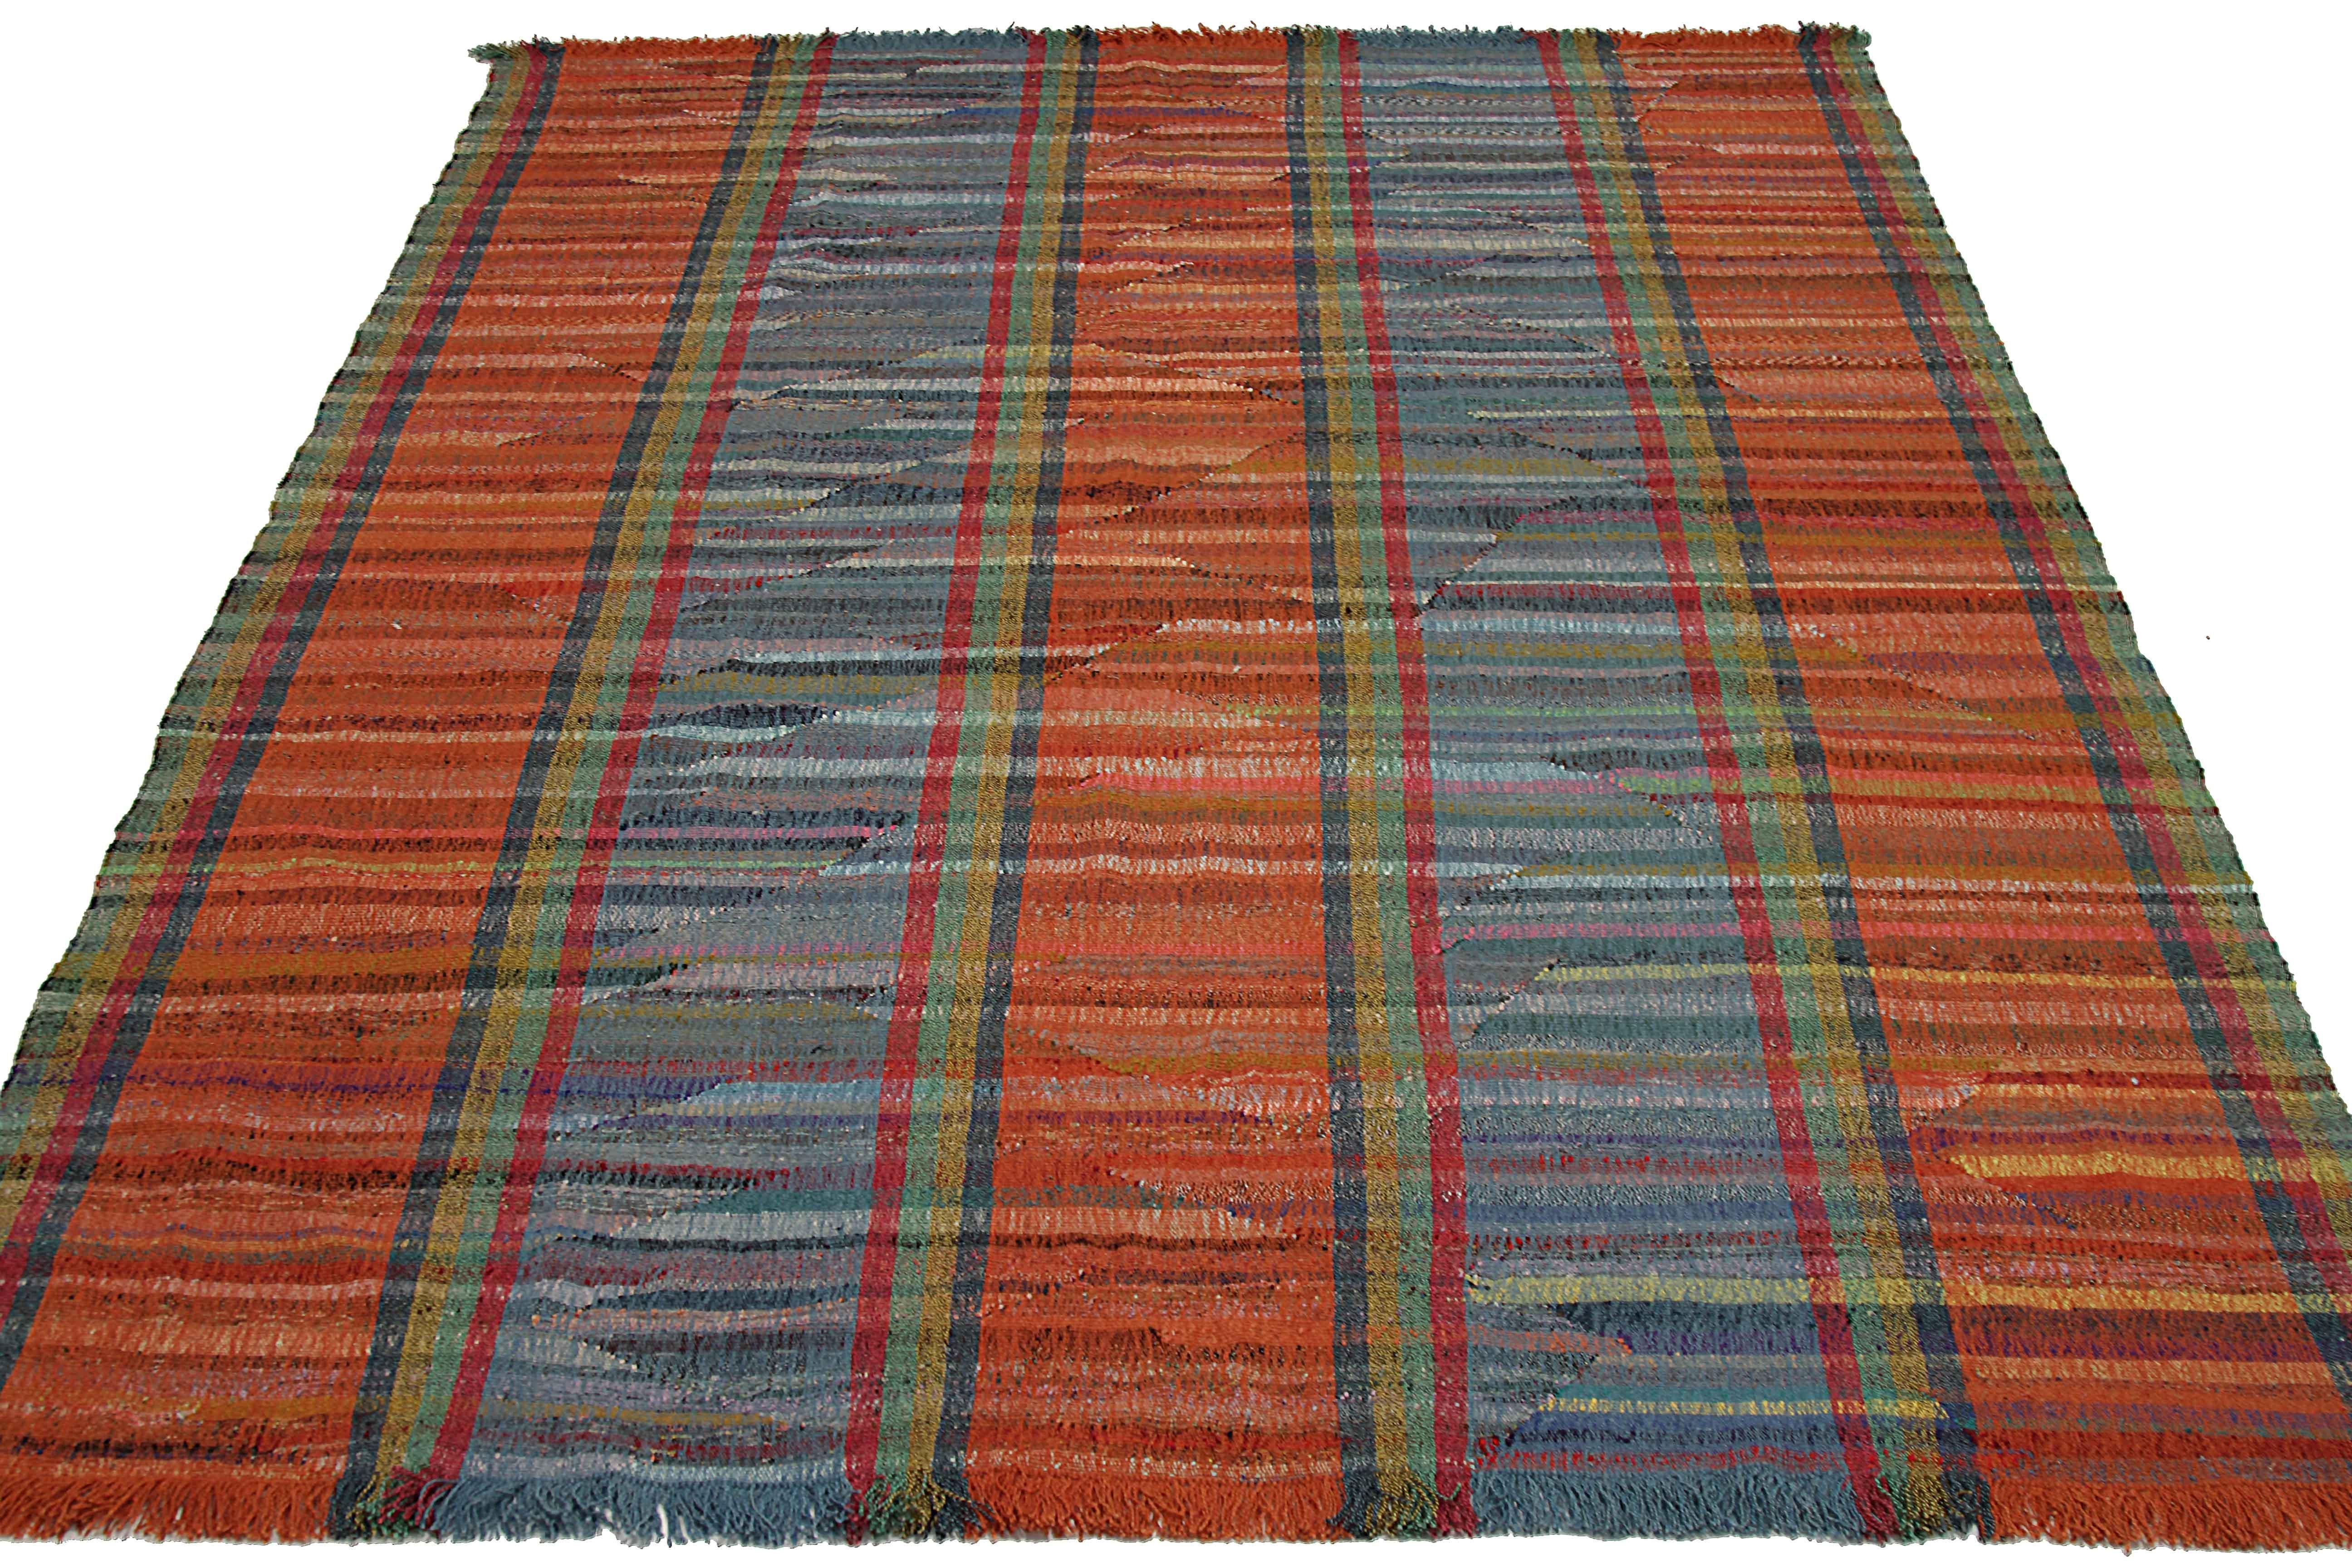 Nouveau tapis turc tissé à la main à partir de laine provenant d'anciens tapis fins. Il s'agit d'un tissage Kilim traditionnel présentant des rayures colorées sur un fond ivoire. C'est une pièce étonnante à obtenir pour les espaces contemporains et